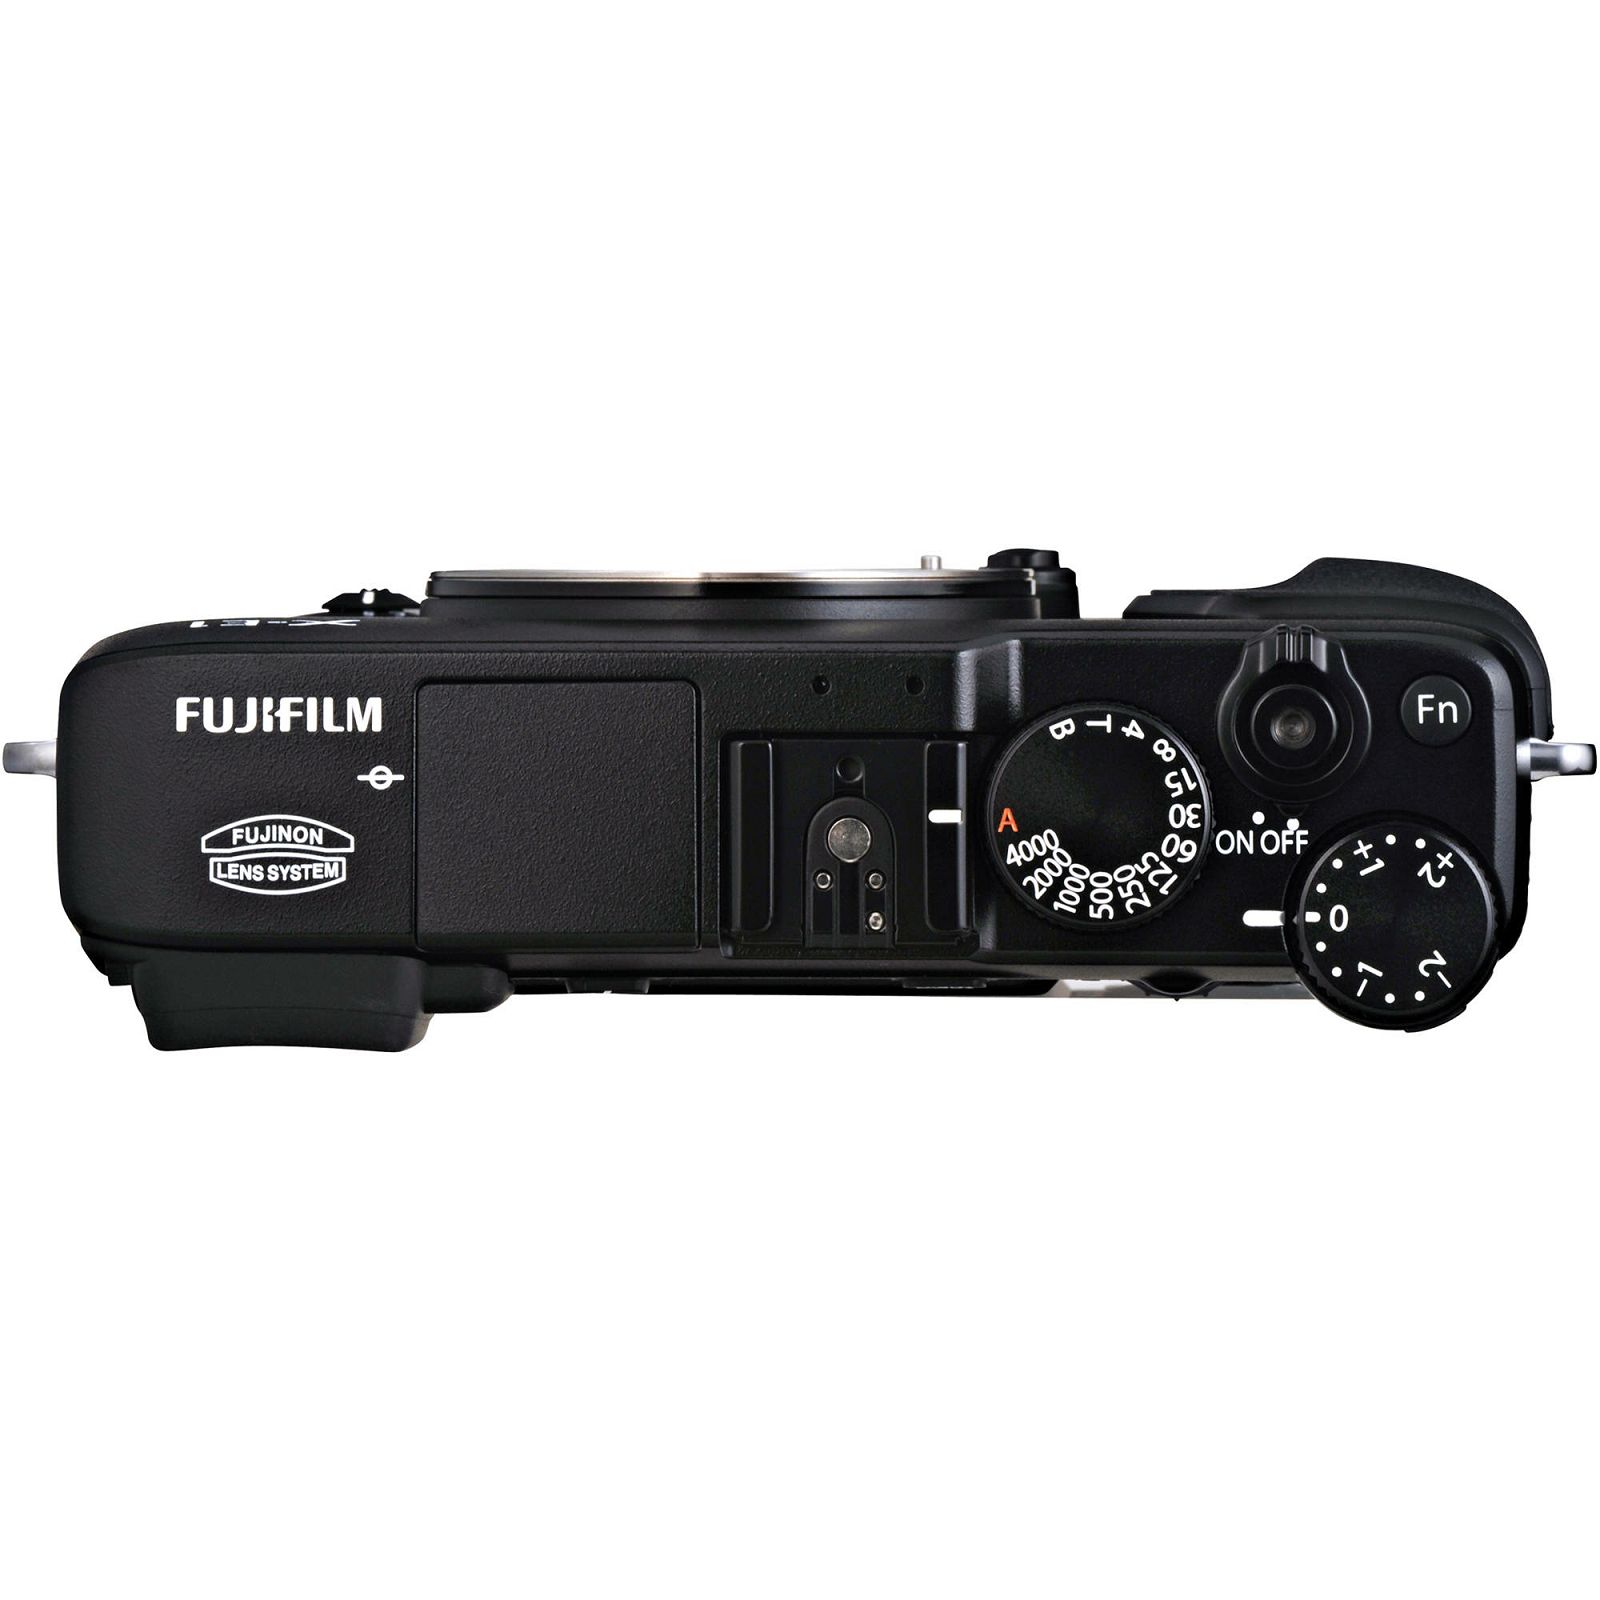 Fuji Finepix X-E1 + 18-55 f2.8-4.0 OIS KIT BLACK Fujifilm Digital Camera Kit fotoaparat + objektiv XF 18-55mm f/2.8-4 Lens (Black)